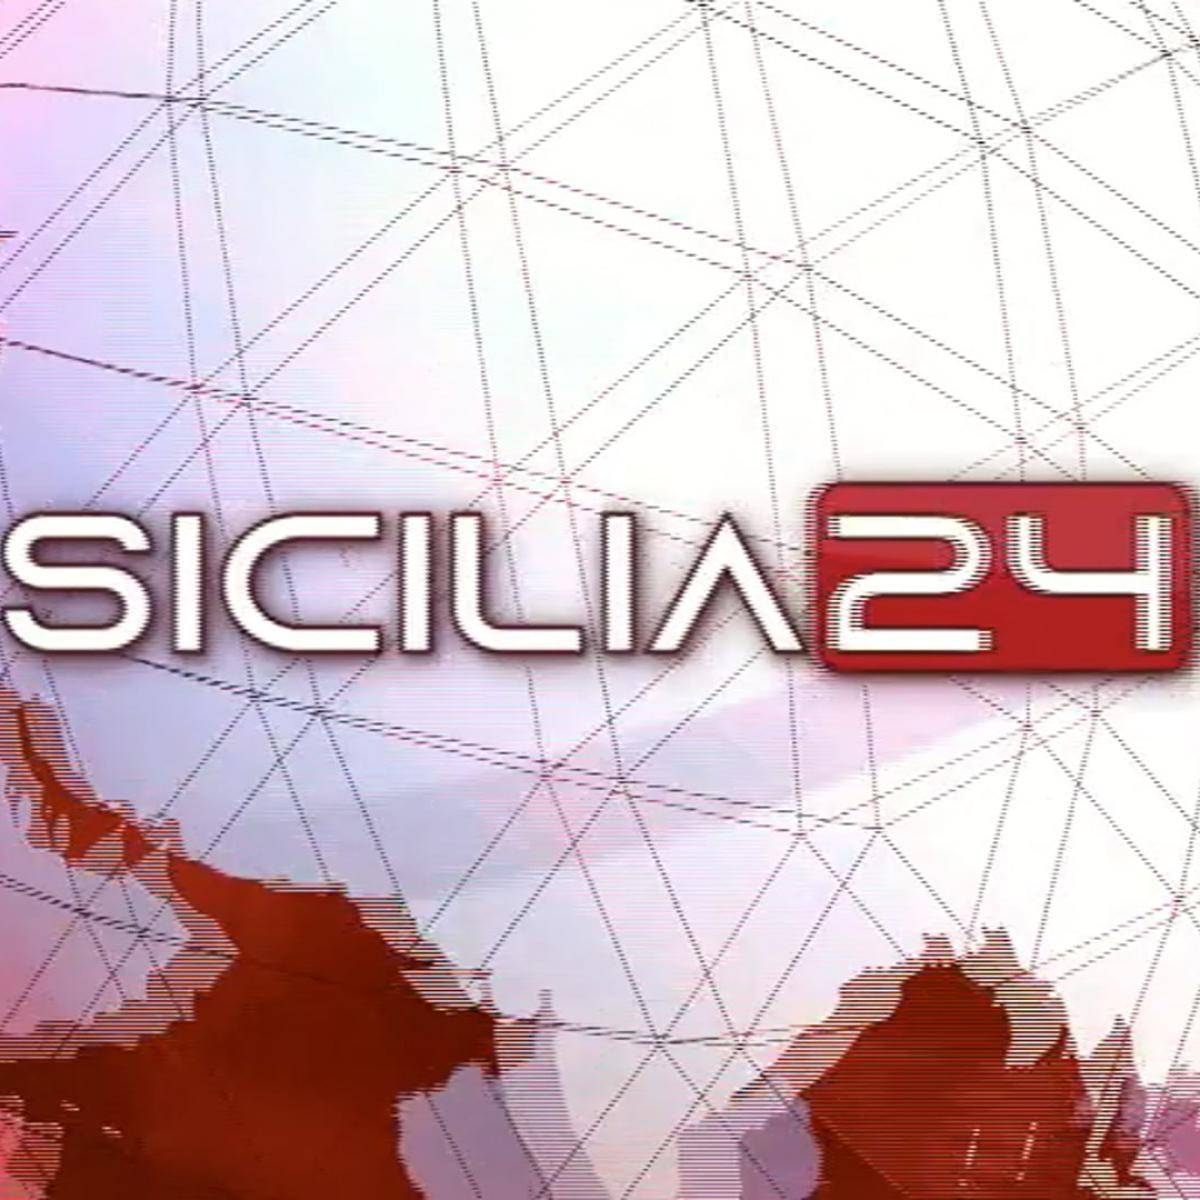 sicilia24-rassegna-stampa-30-aprile-2022-vimeo-thumbnail.jpg